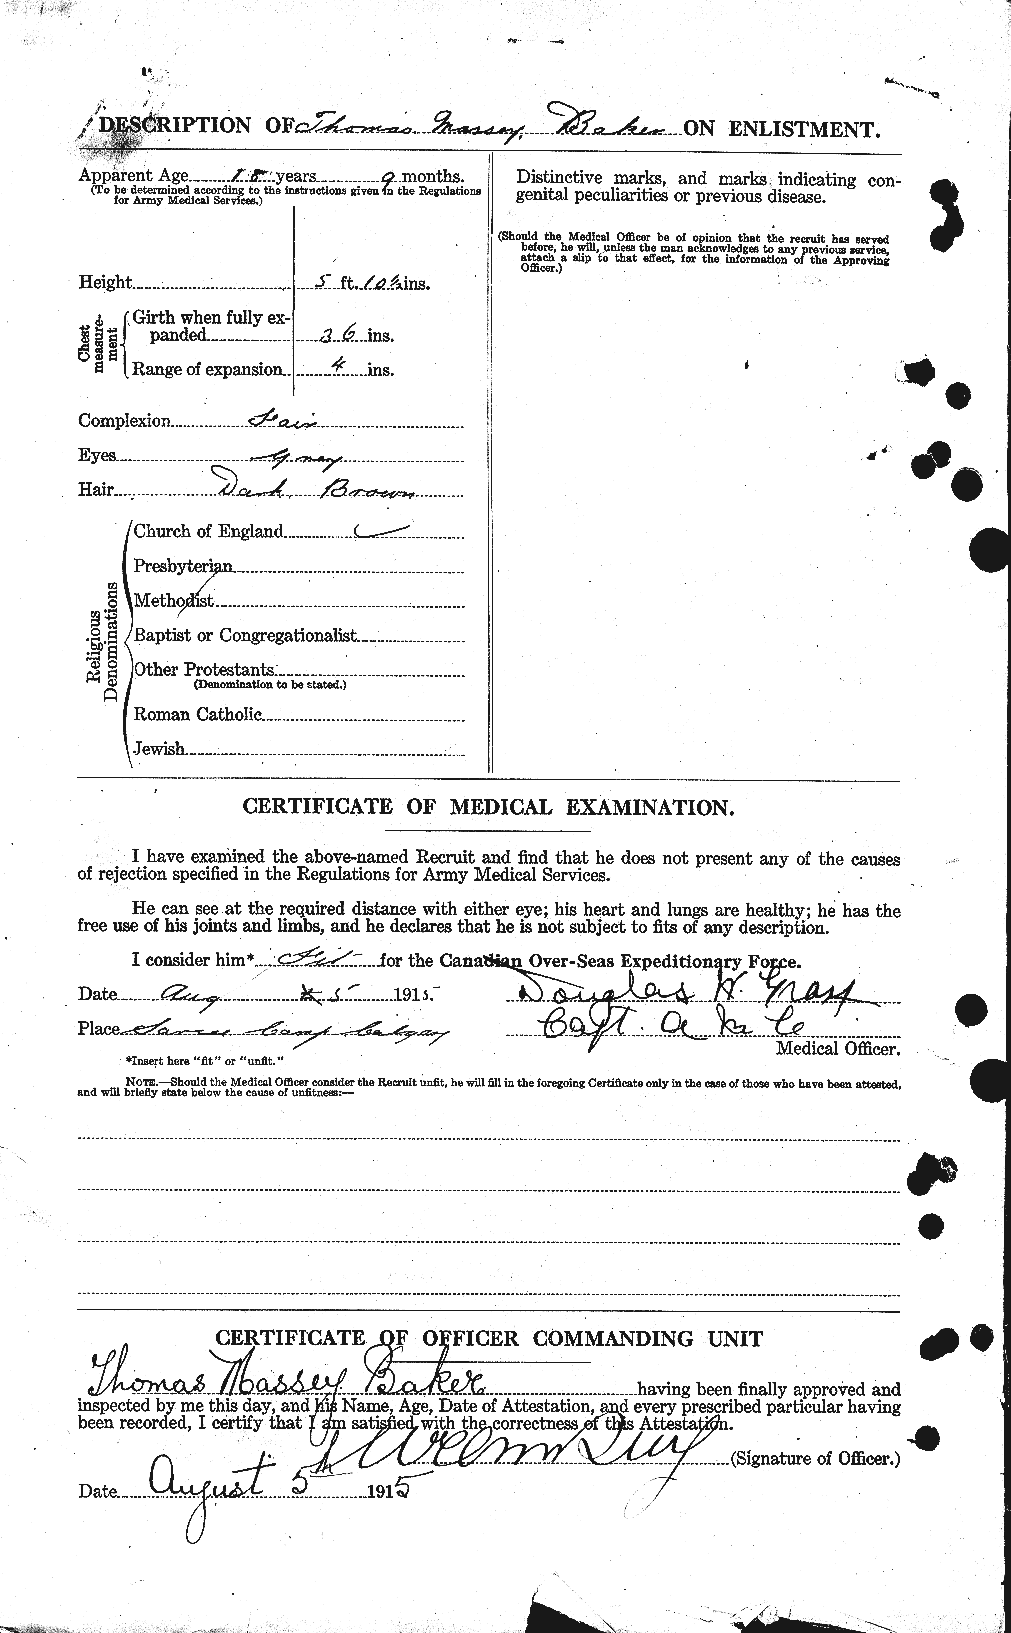 Dossiers du Personnel de la Première Guerre mondiale - CEC 221445b